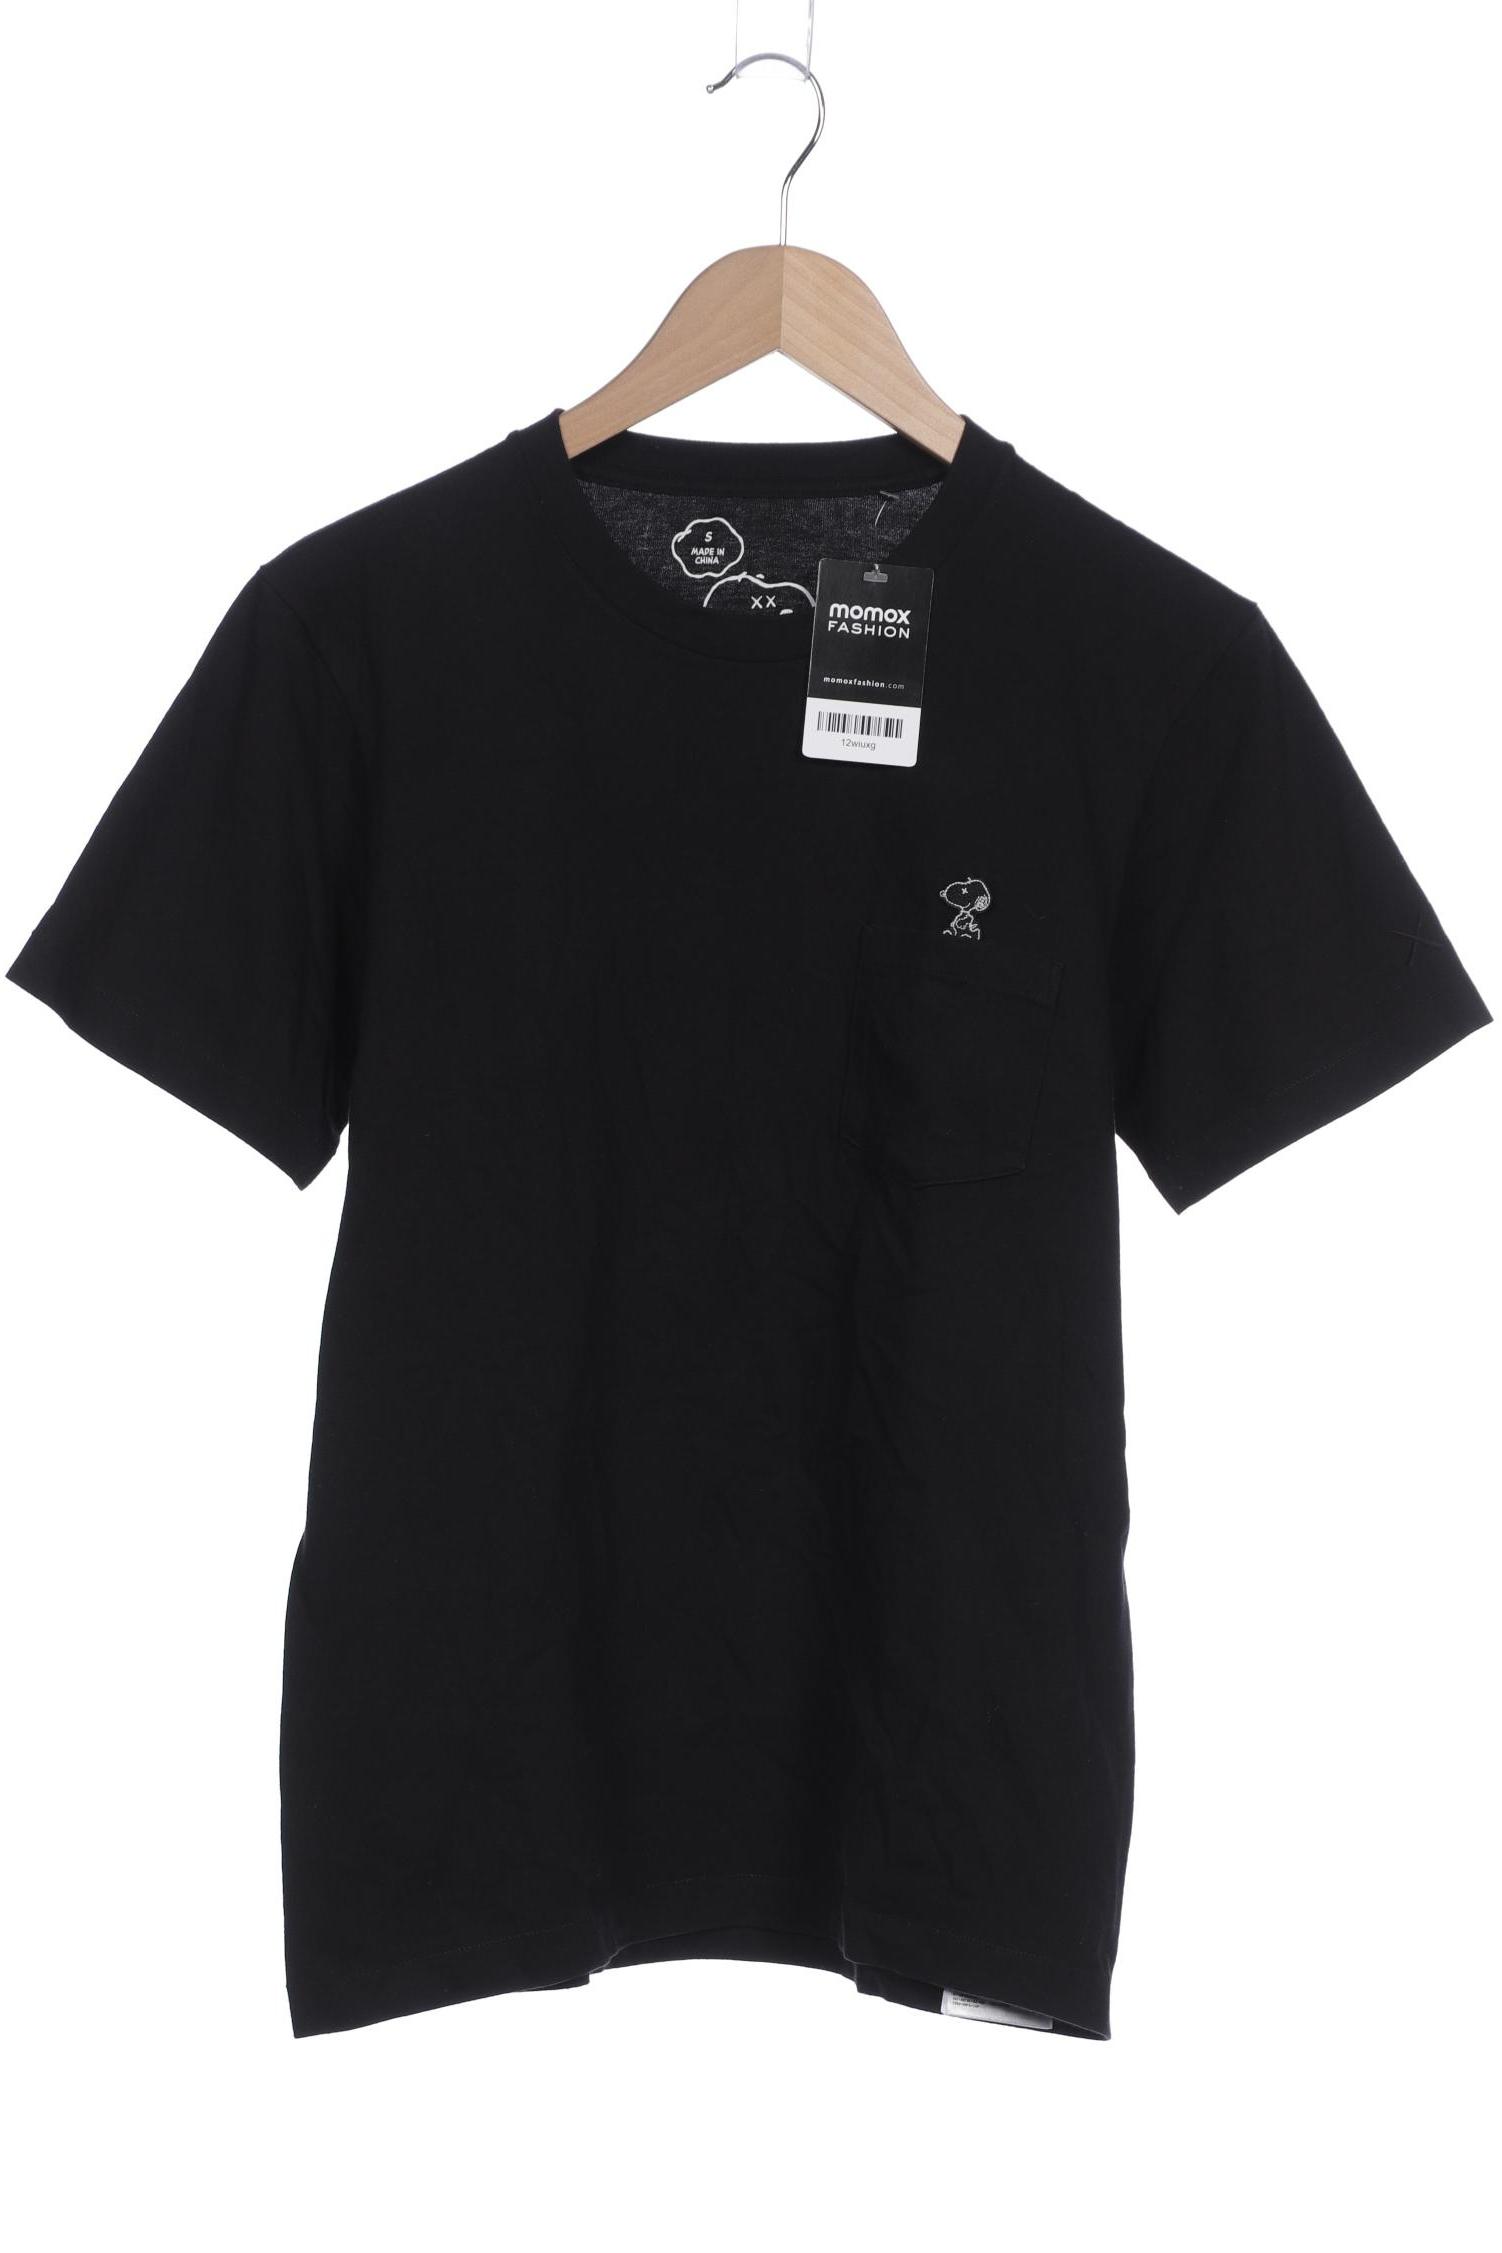 uniqlo Herren T-Shirt, schwarz, Gr. 46 von uniqlo